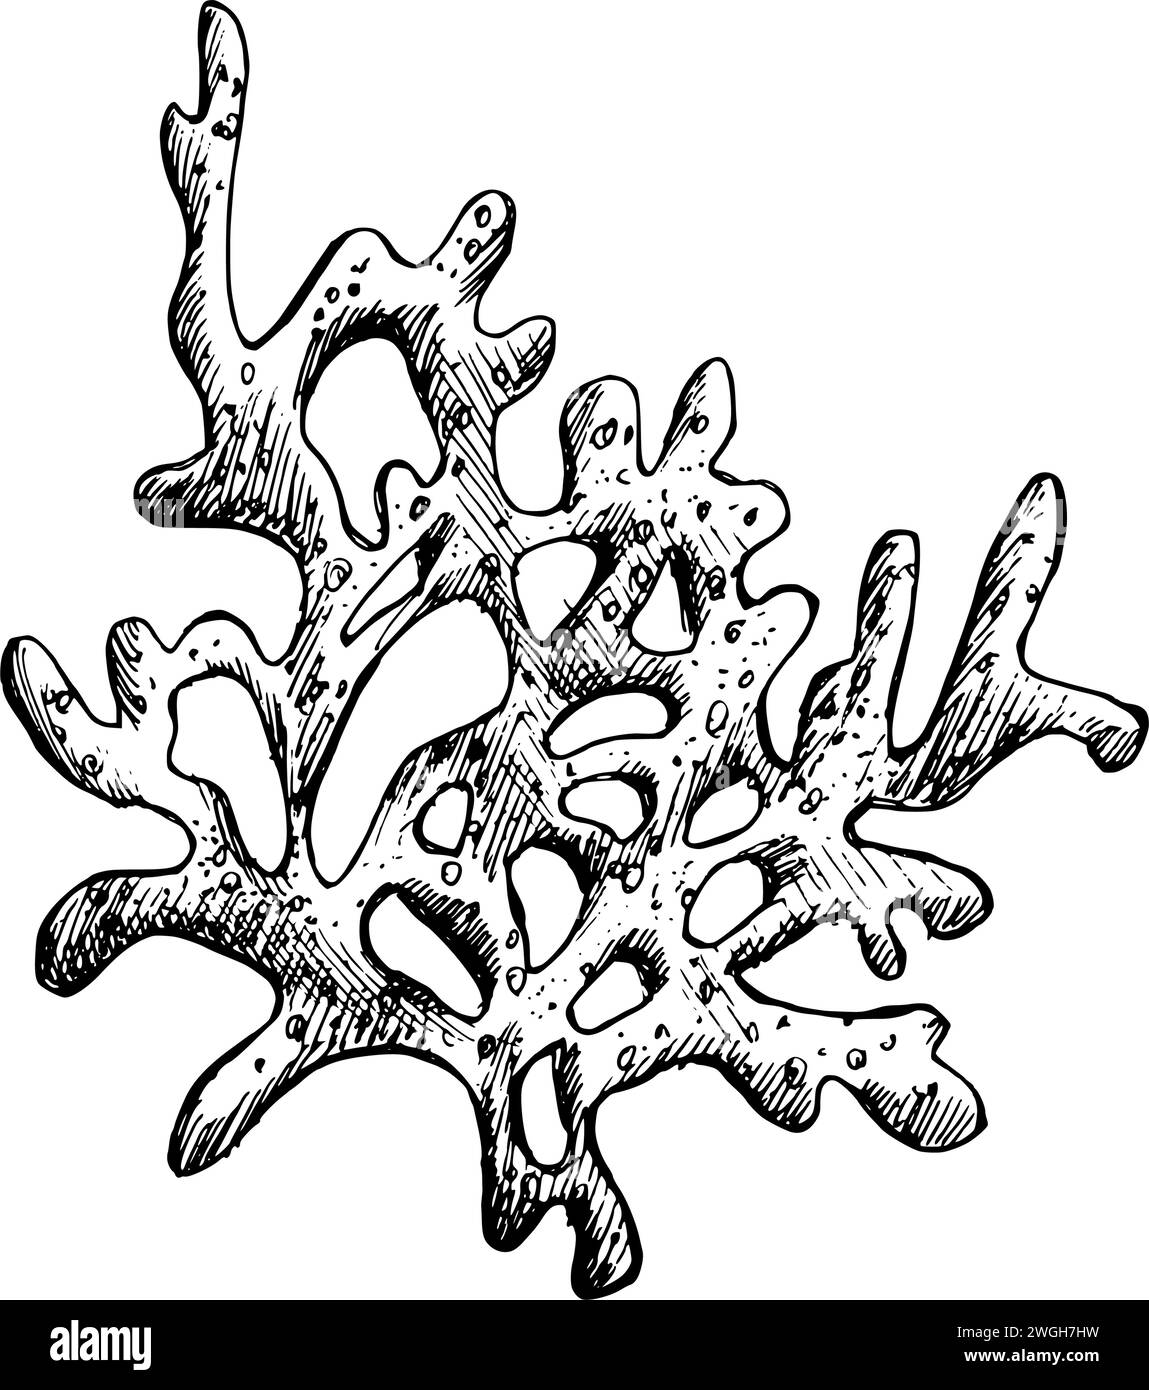 Unterwasser-Welt-Clipart mit einem Zweig von Meereskorallen. Grafische Abbildung, handgezeichnet mit schwarzer Tinte. Isolierter Objekt-EPS-Vektor. Stock Vektor